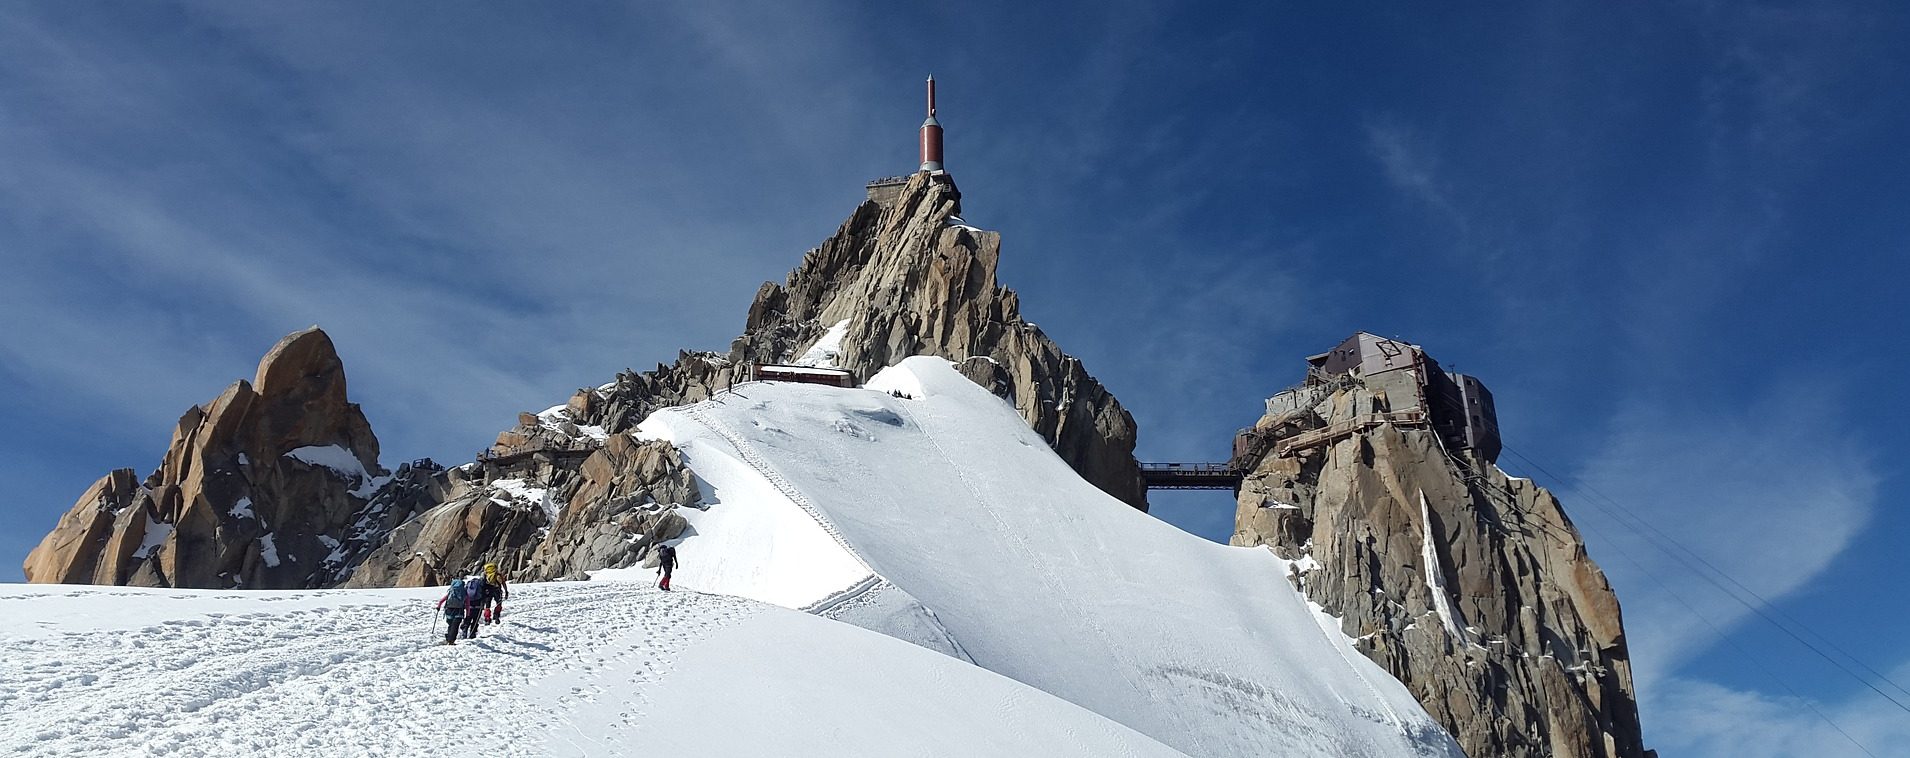 Patient Berg: Matterhorn und Mont Blanc kränkeln